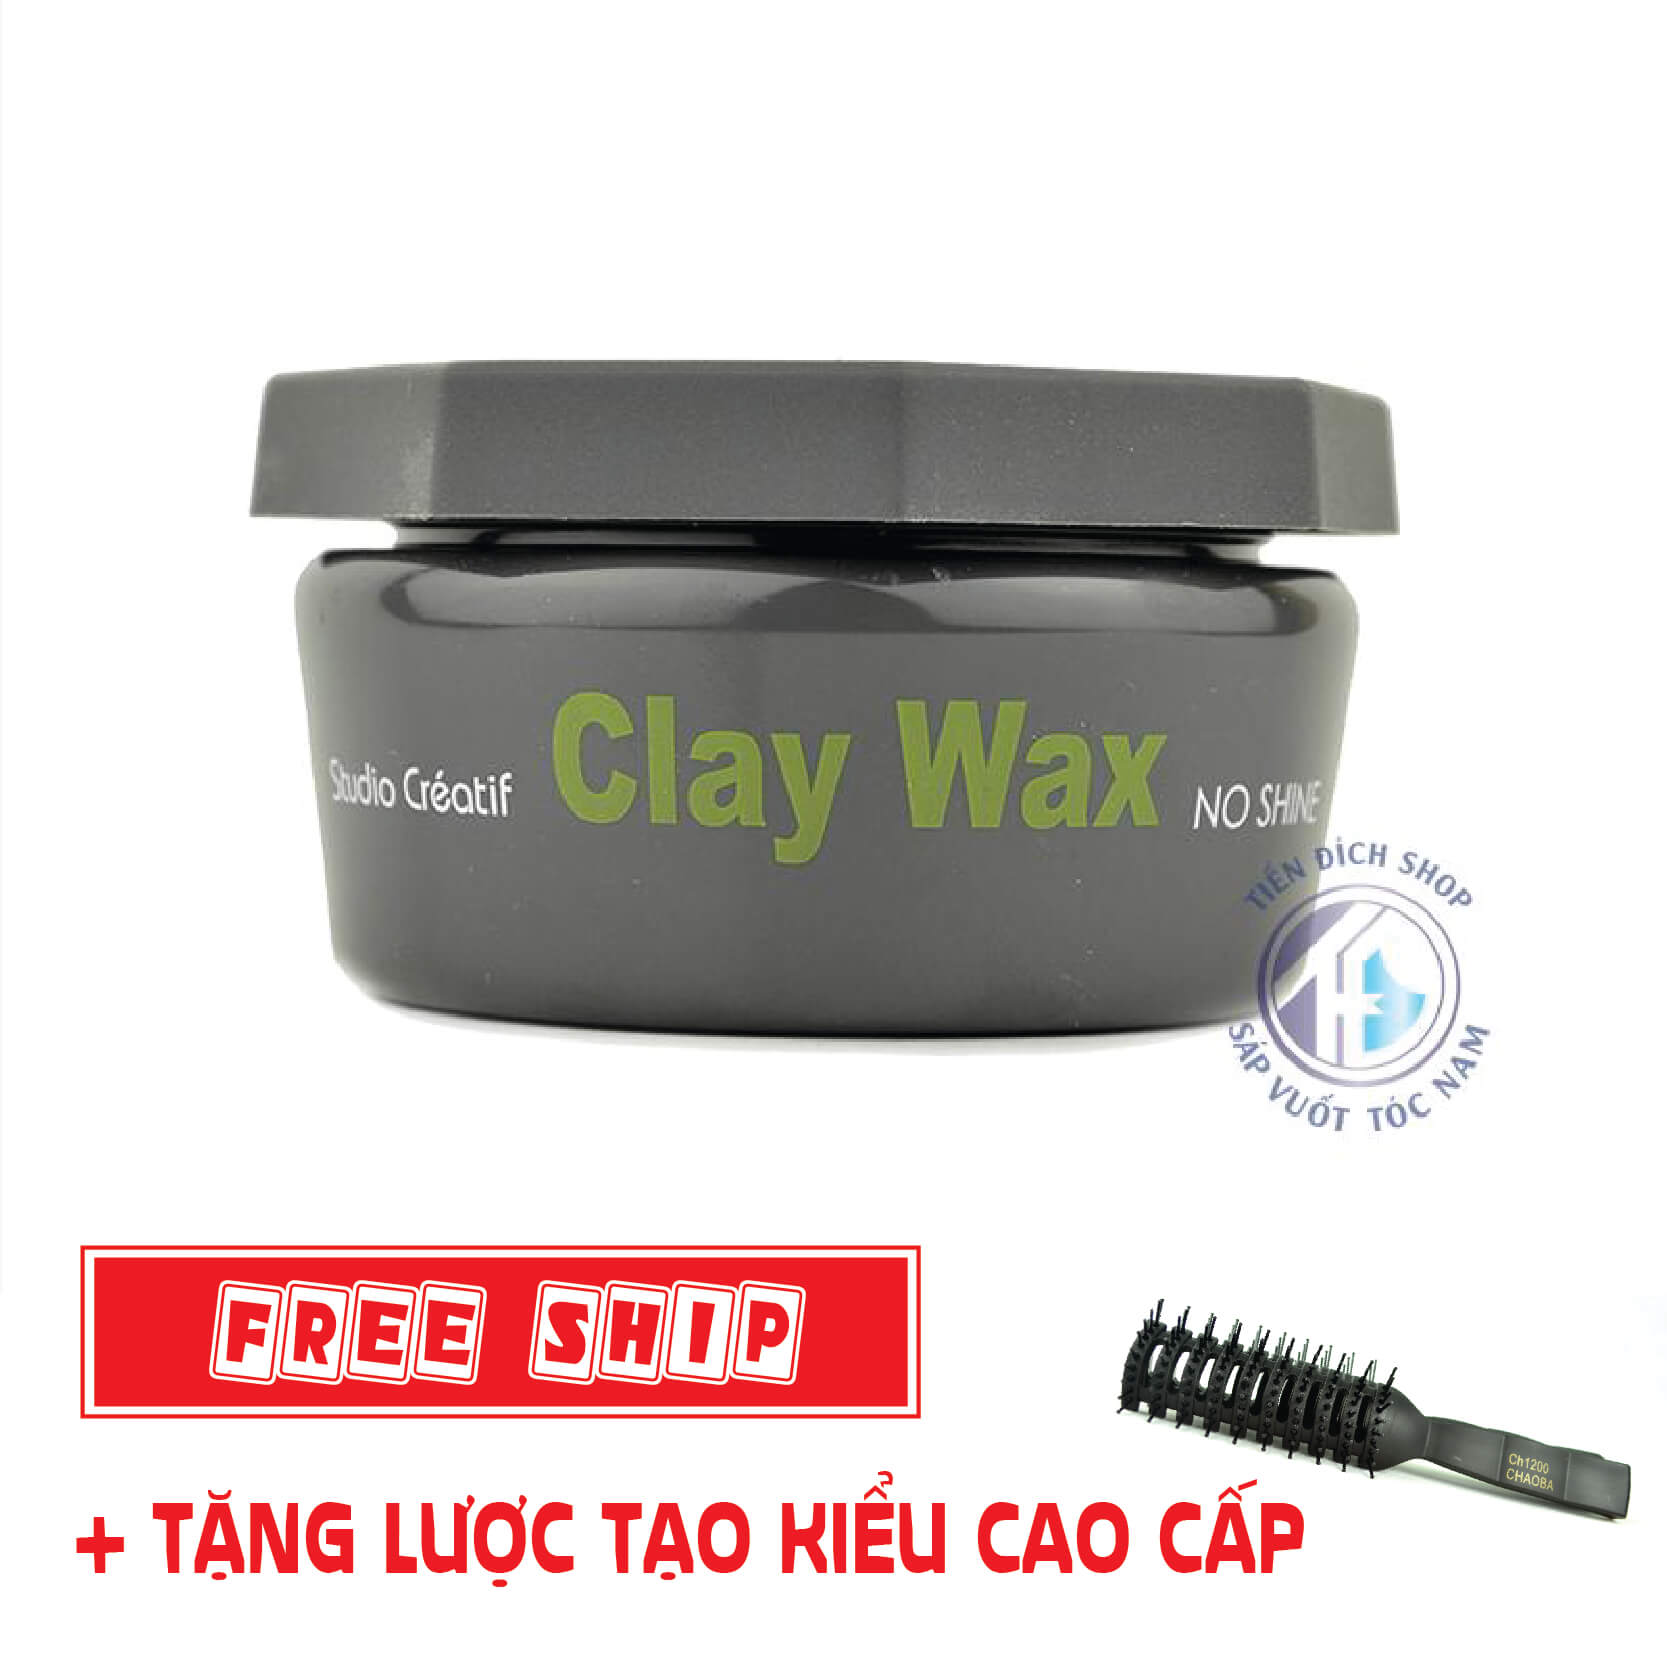 Sáp vuốt tóc CLAY WAX TRẮNG Profession 100gr tạo kiểu giữ nếp cho tóc HÀNG  CHÍNH HÃNG  Shopee Việt Nam